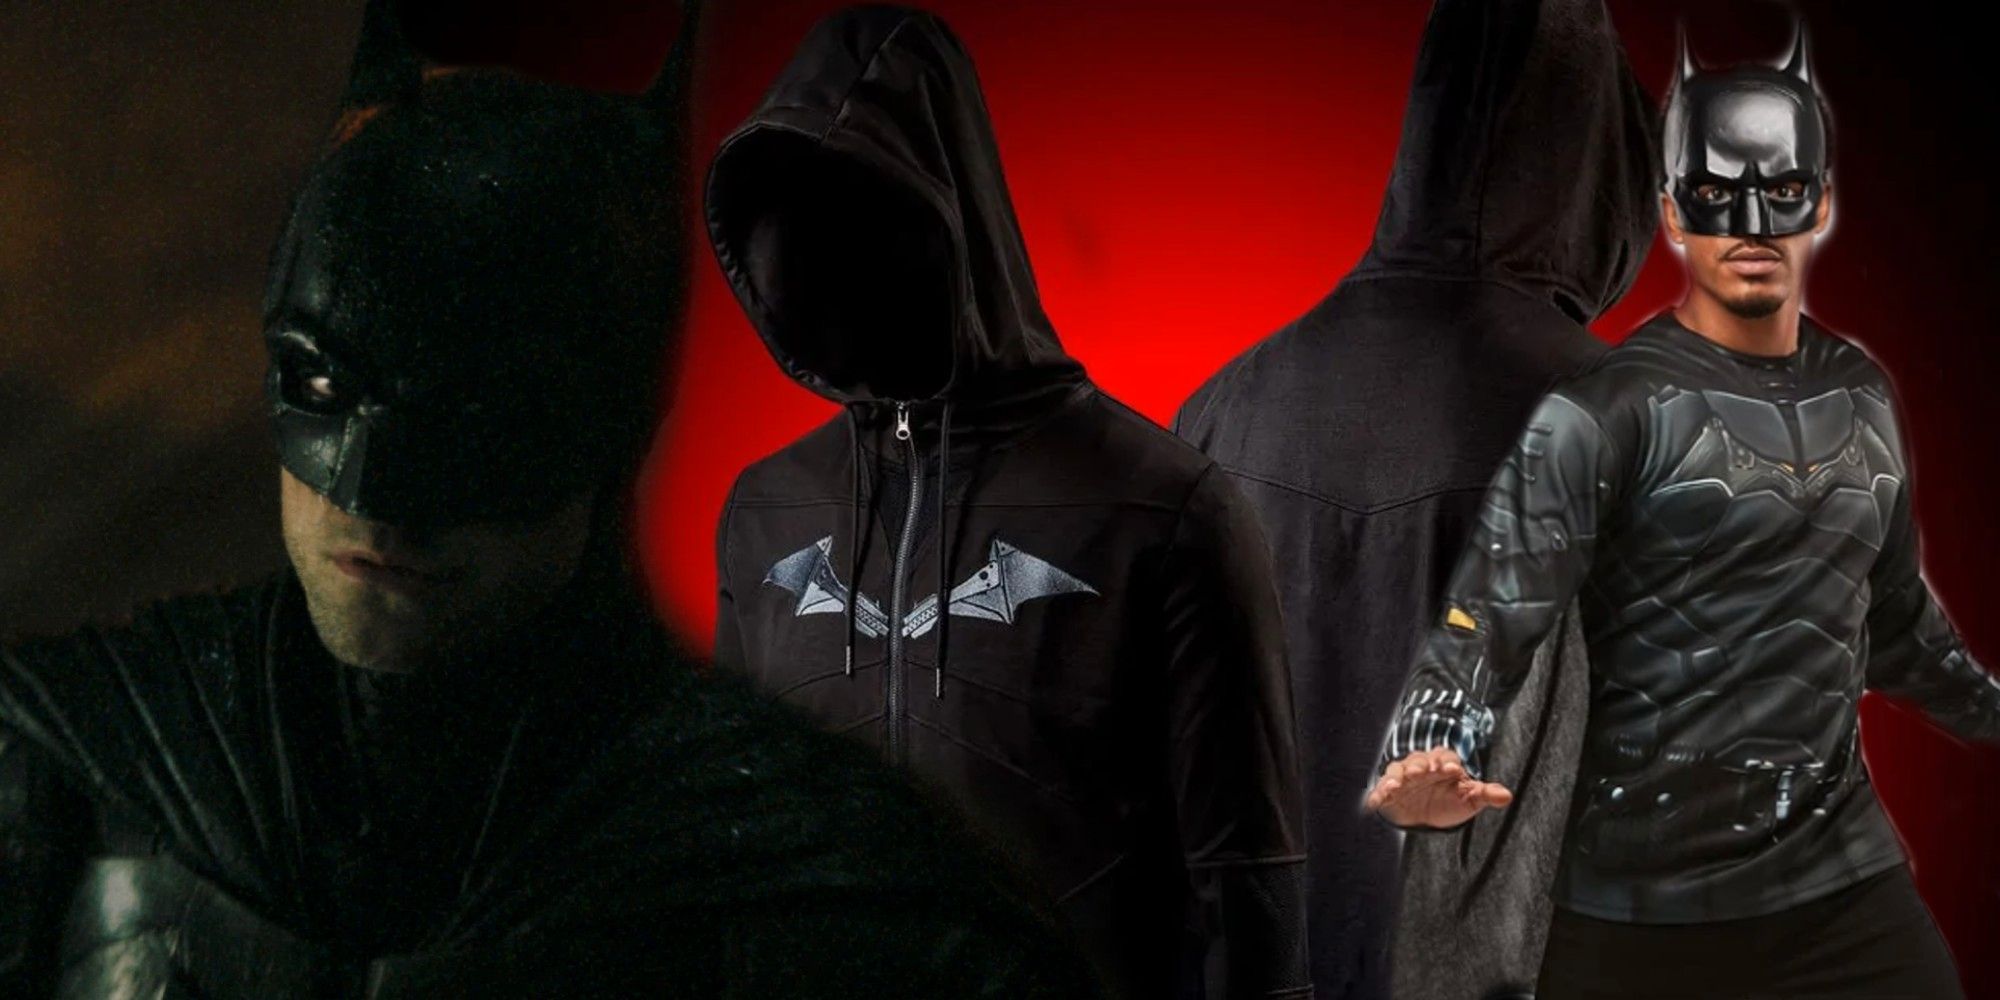 Batman Merch imita el traje de murciélago de Robert Pattinson y el disfraz de Catwoman